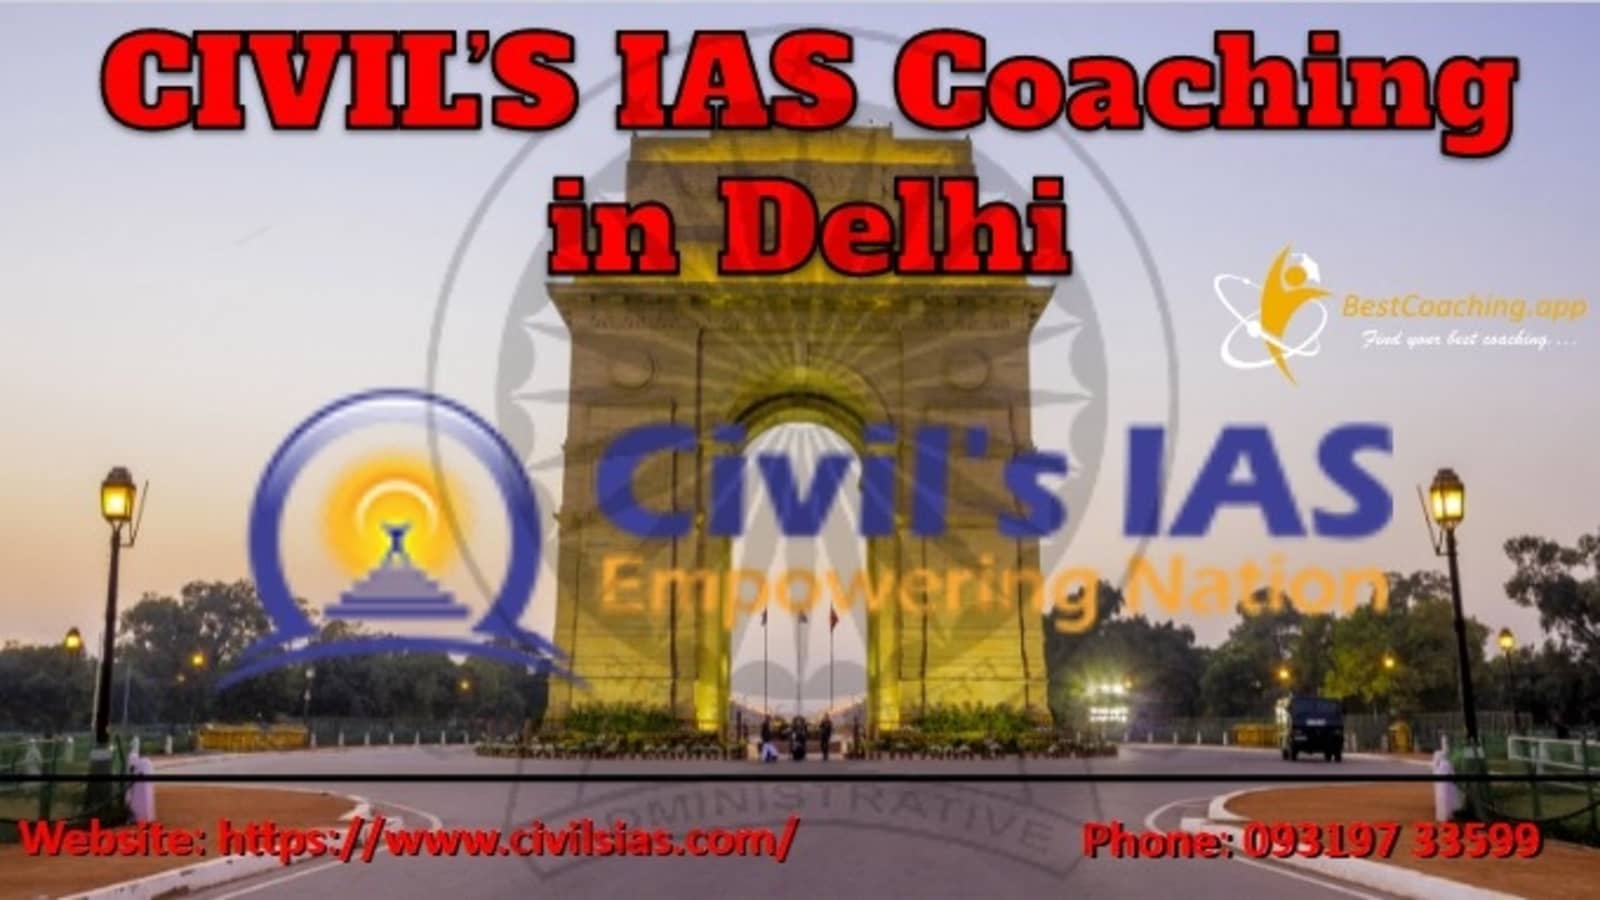 CIVIL’S IAS Coaching in Delhi